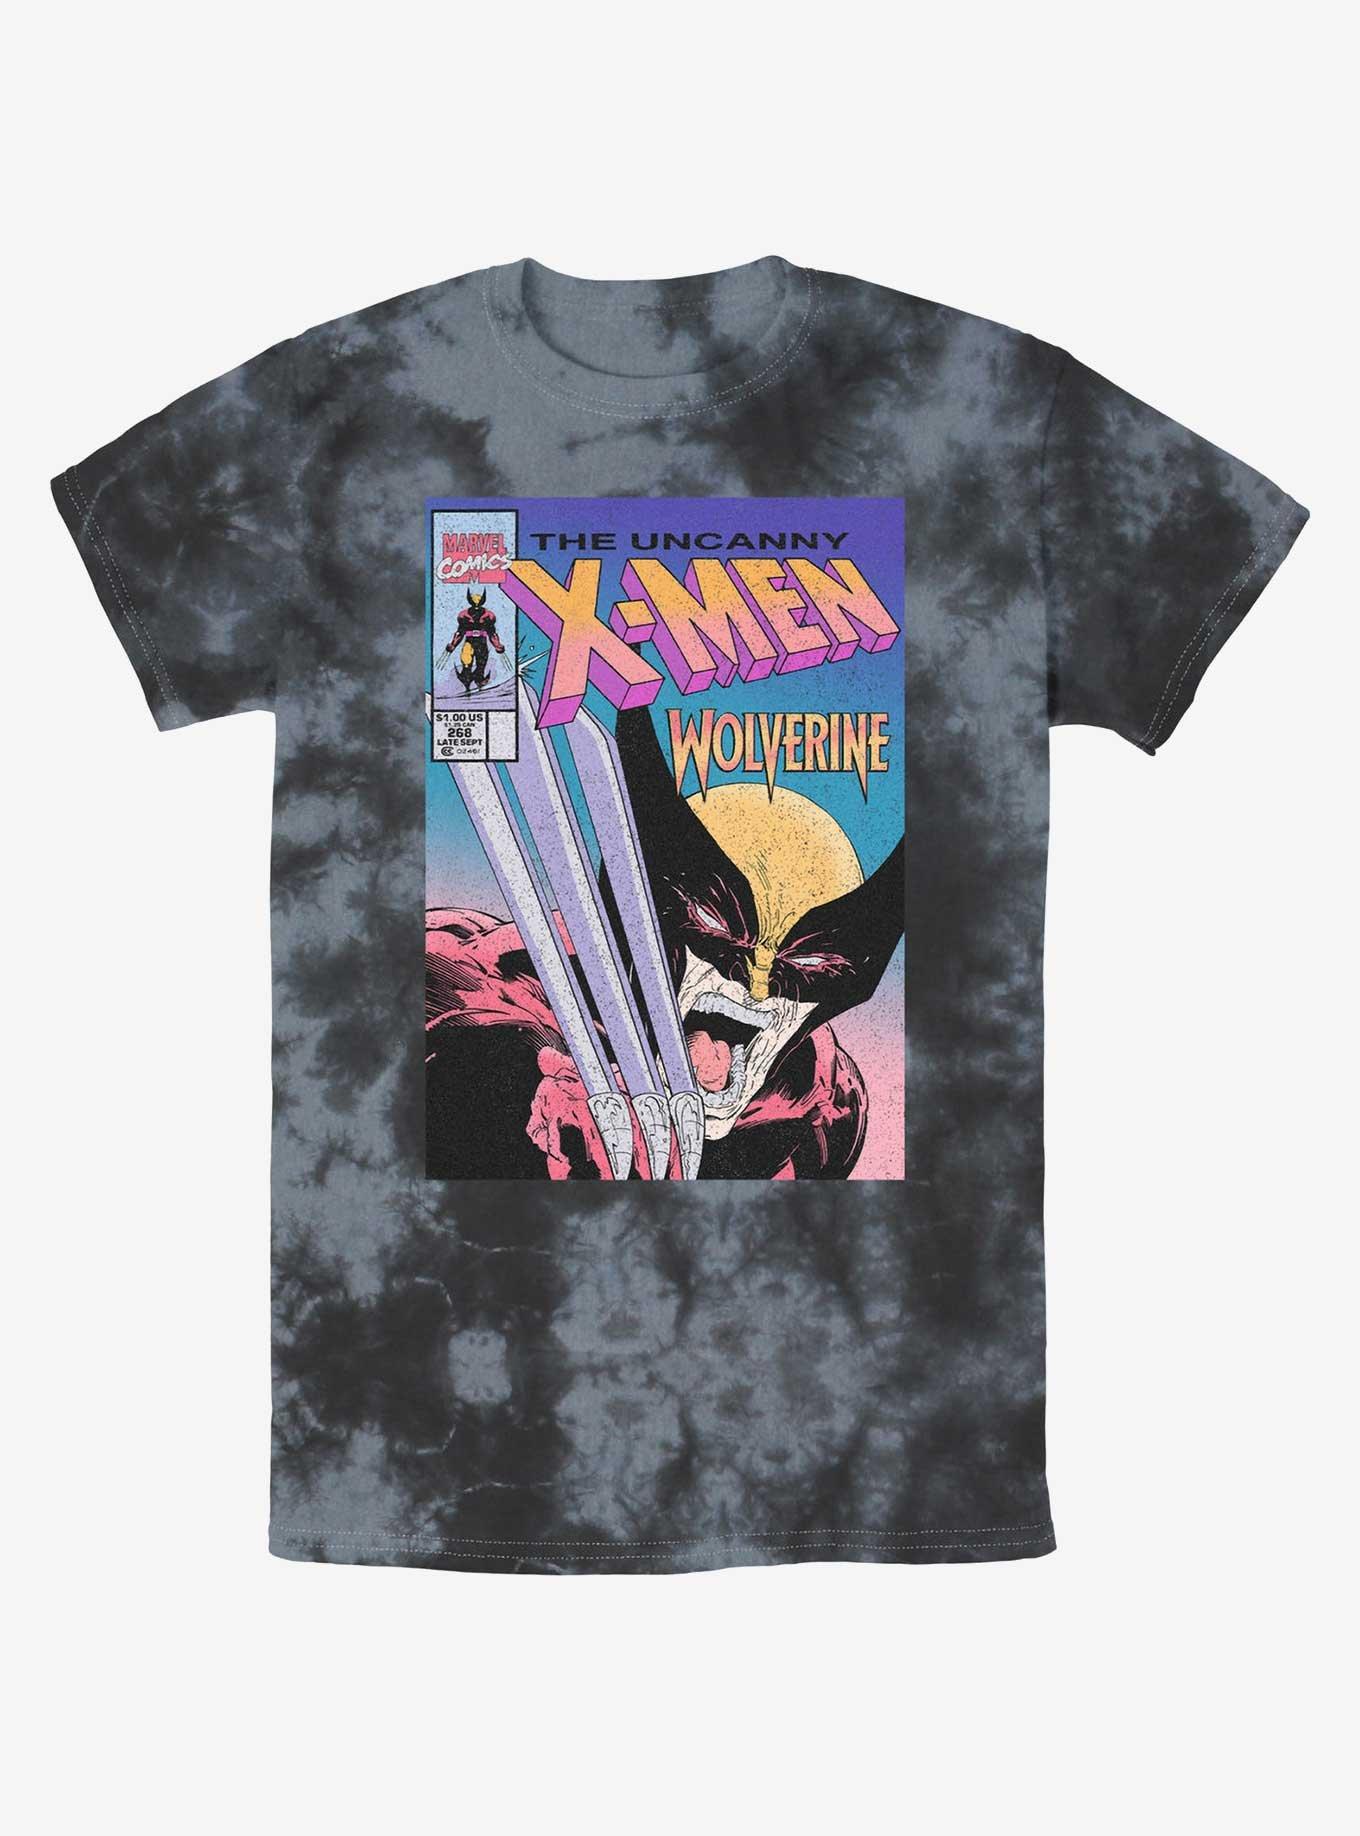 Wolverine The Uncanny X-Men Comic Cover Tie-Dye T-Shirt